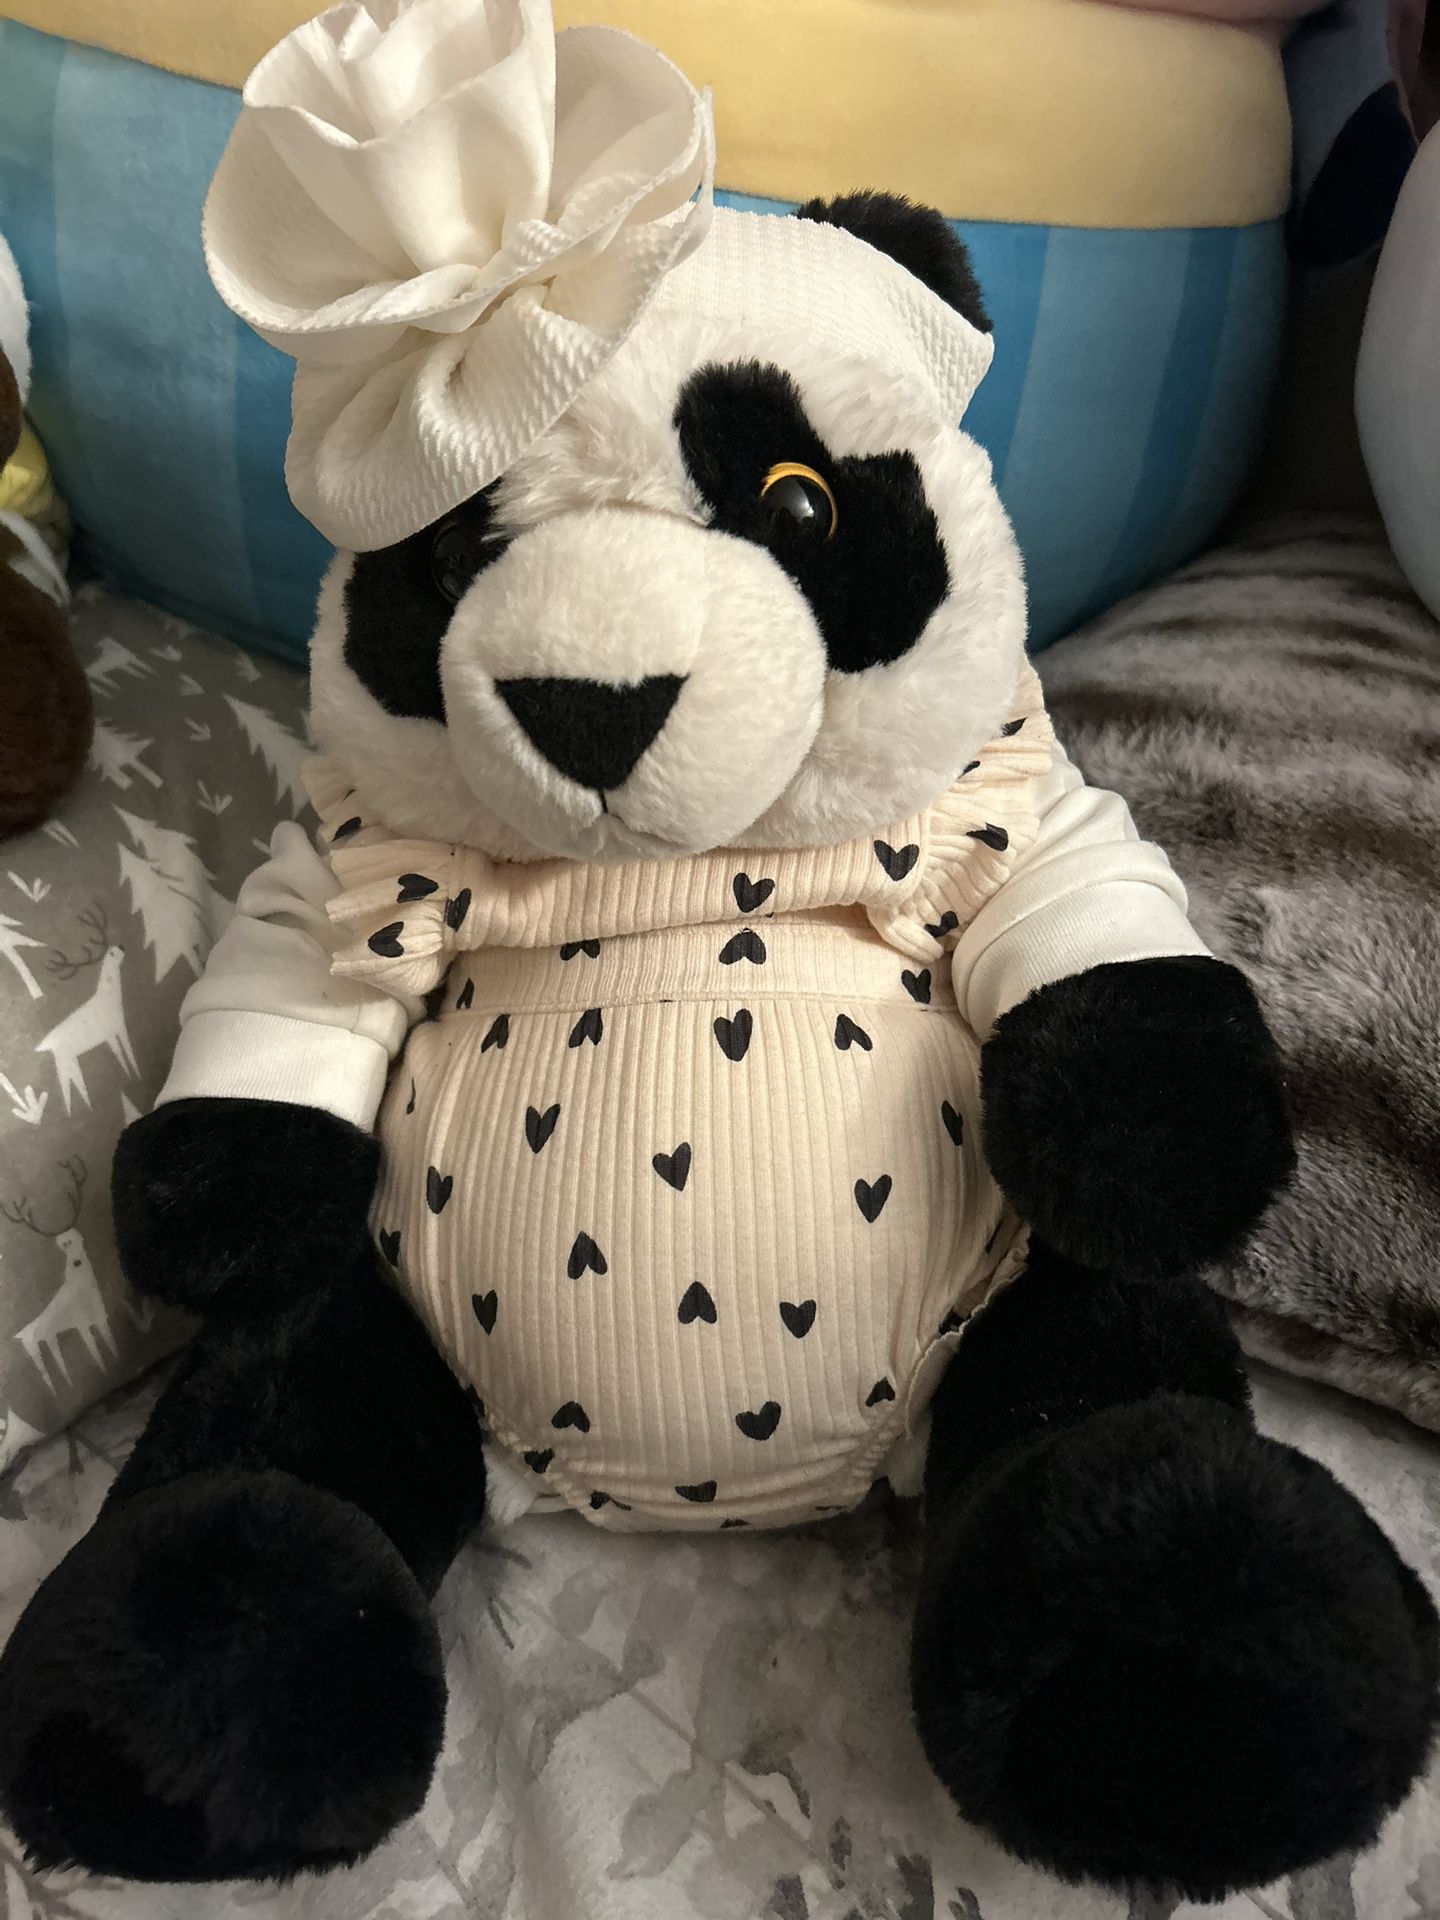 Stuffed Animal Panda 